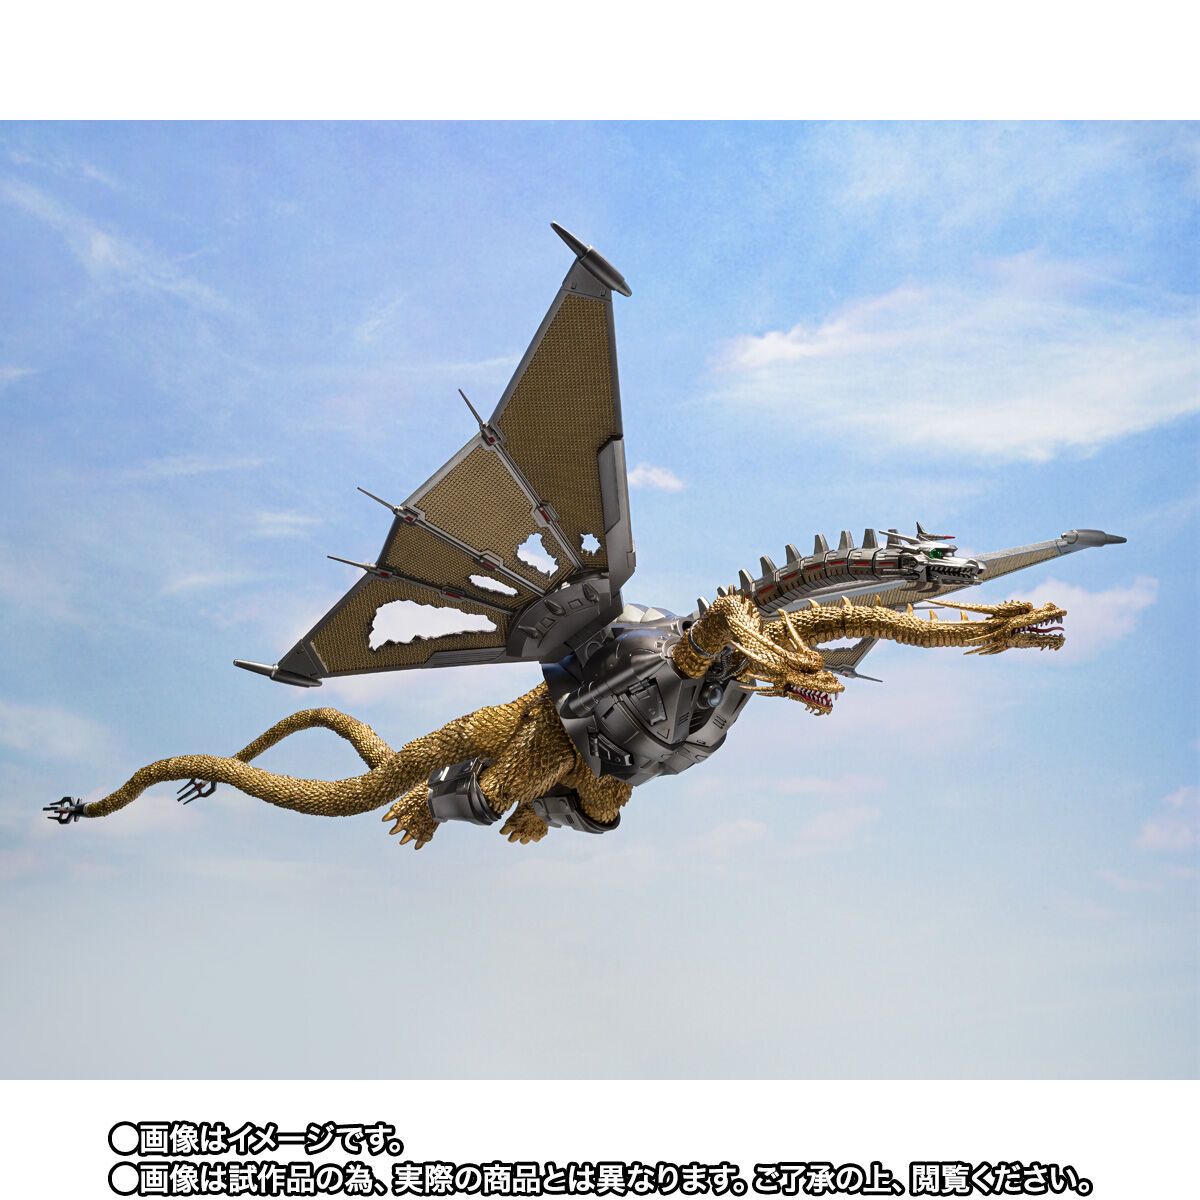 ゴジラVSキングギドラ「S.H.MonsterArts メカキングギドラ 新宿決戦 Special Set」のフィギュア情報